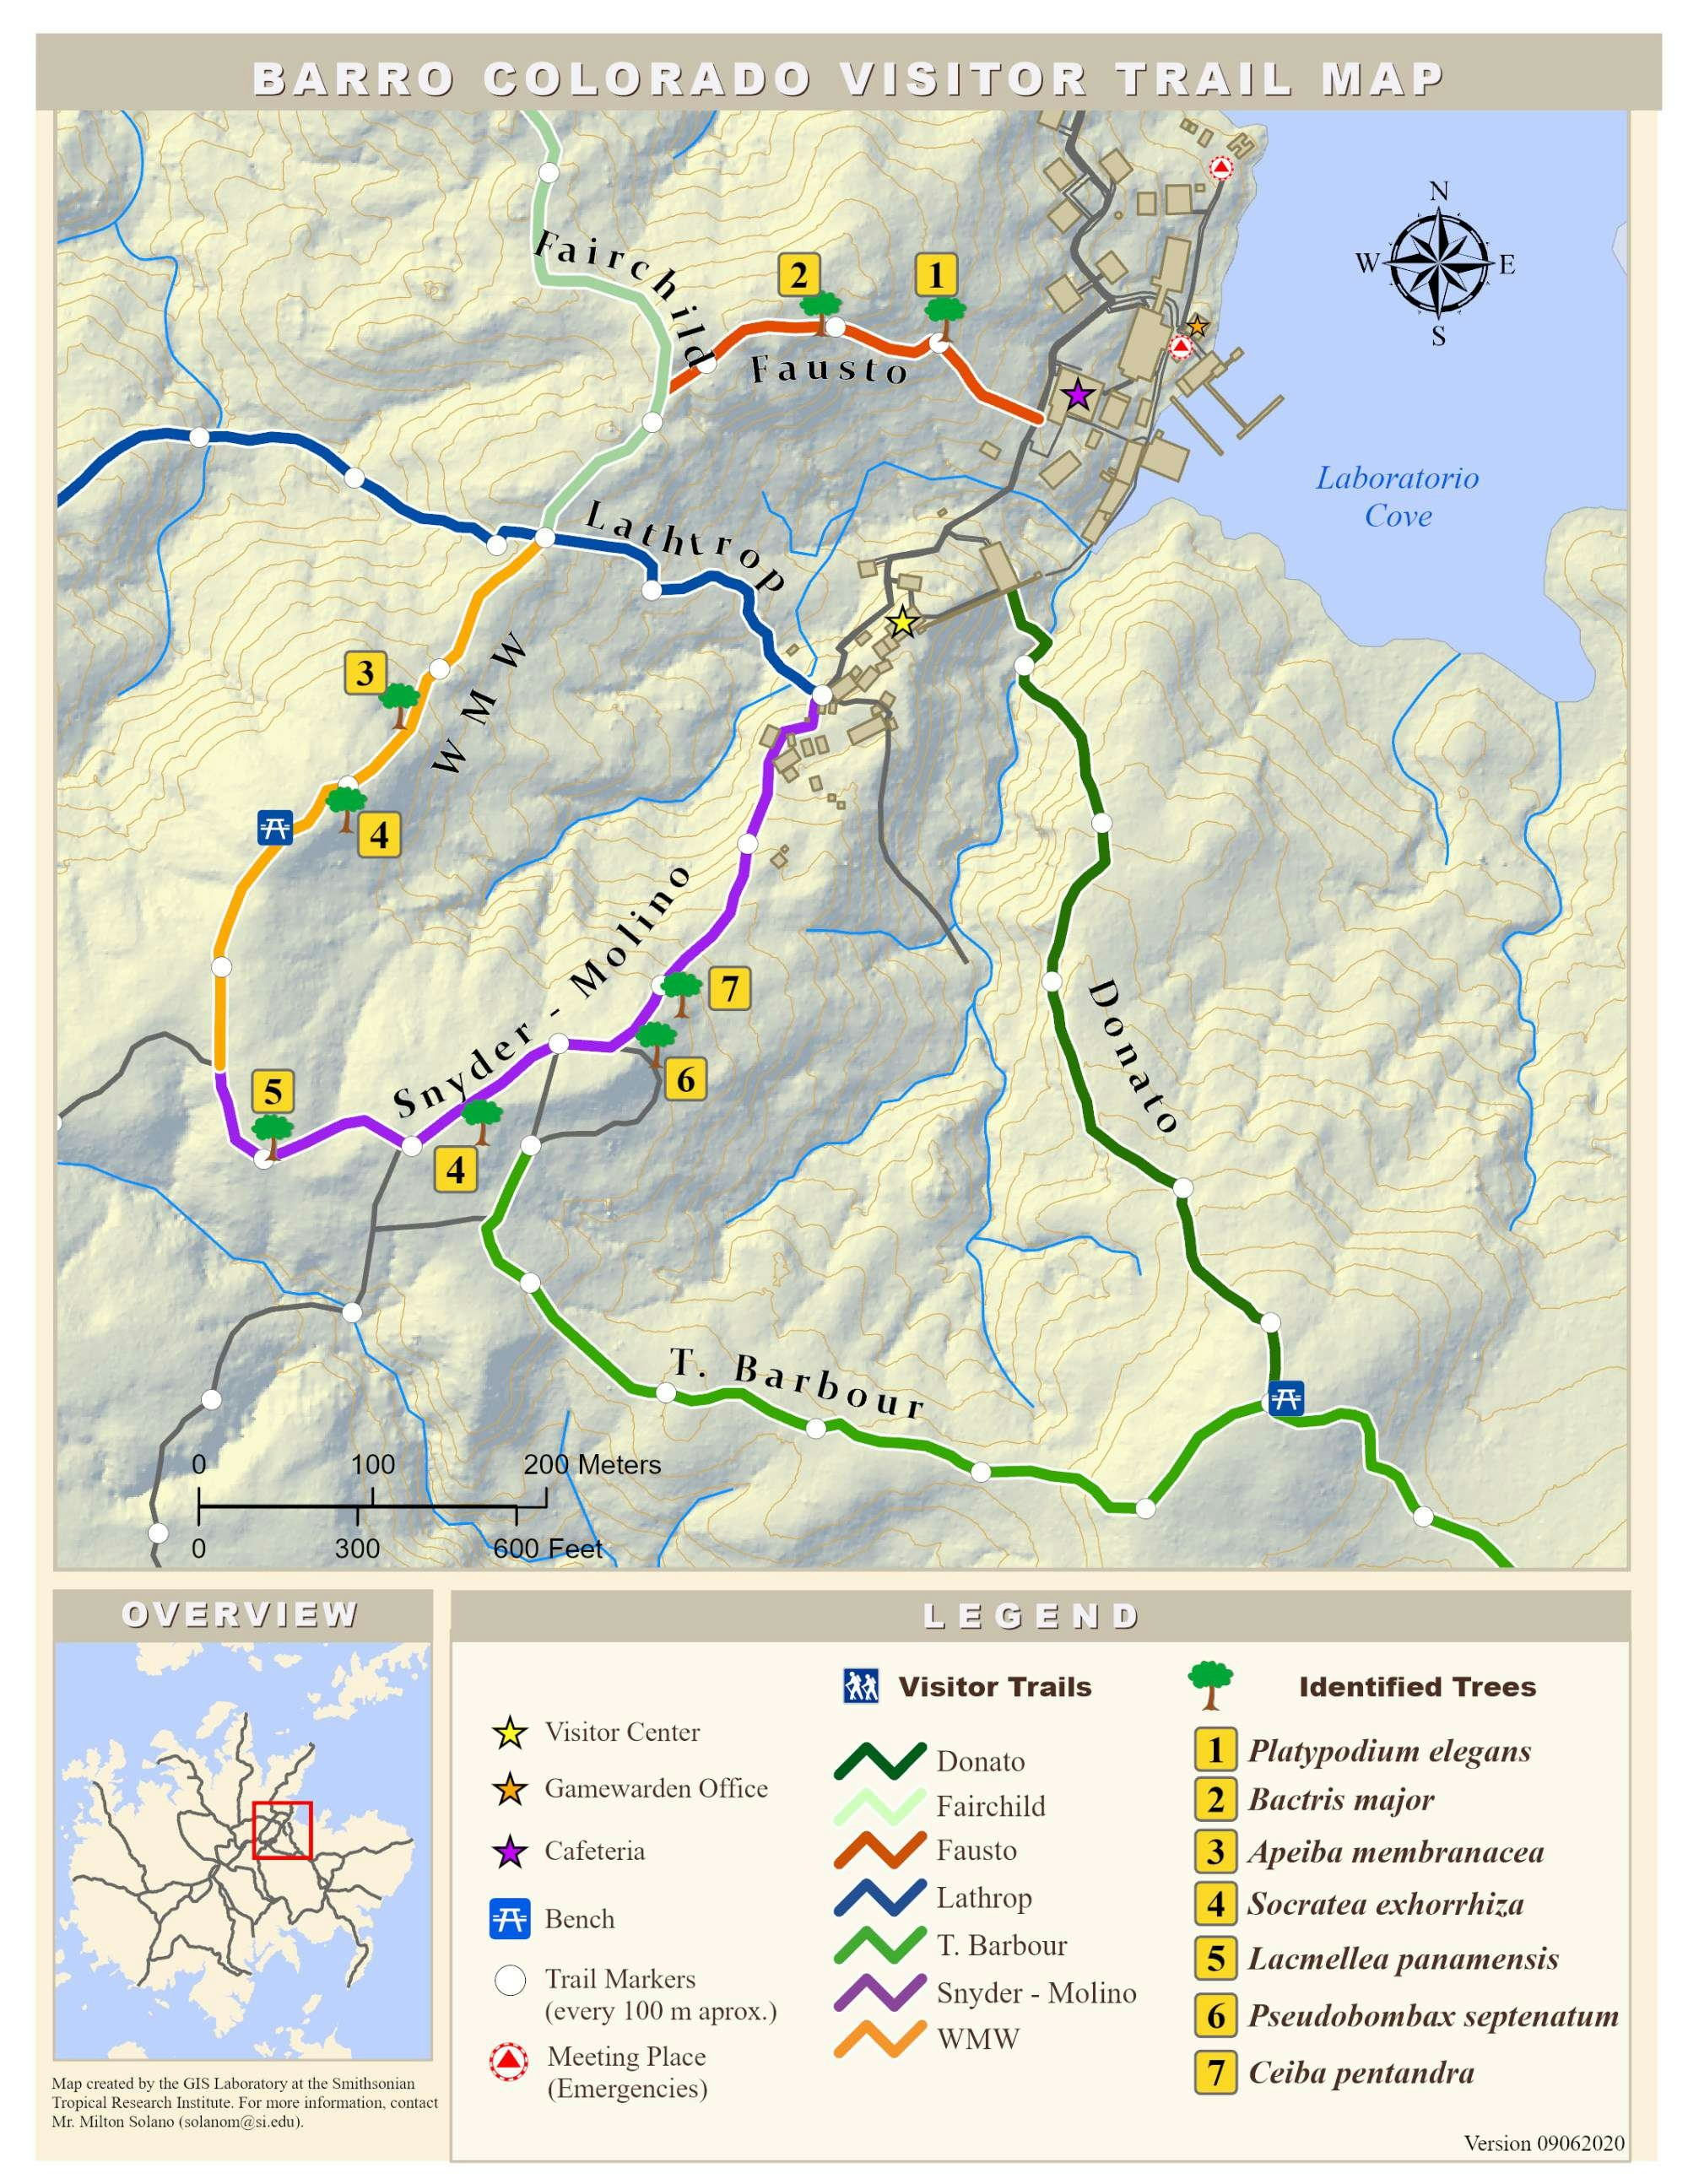 Barro Colorado Visitors Trail Map